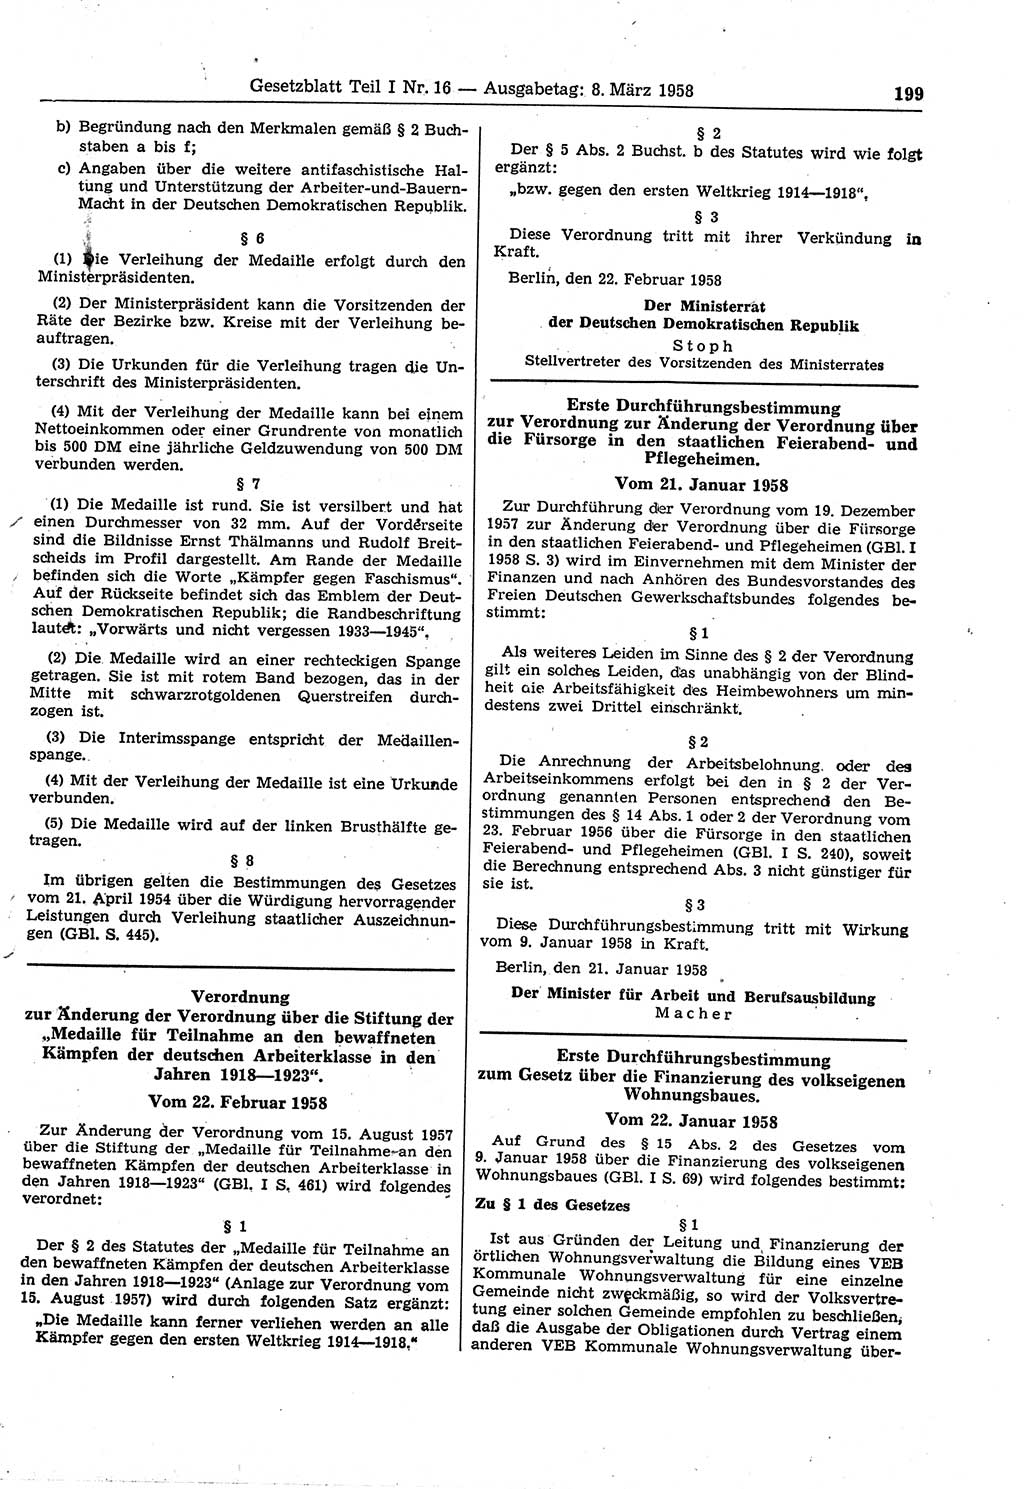 Gesetzblatt (GBl.) der Deutschen Demokratischen Republik (DDR) Teil Ⅰ 1958, Seite 199 (GBl. DDR Ⅰ 1958, S. 199)